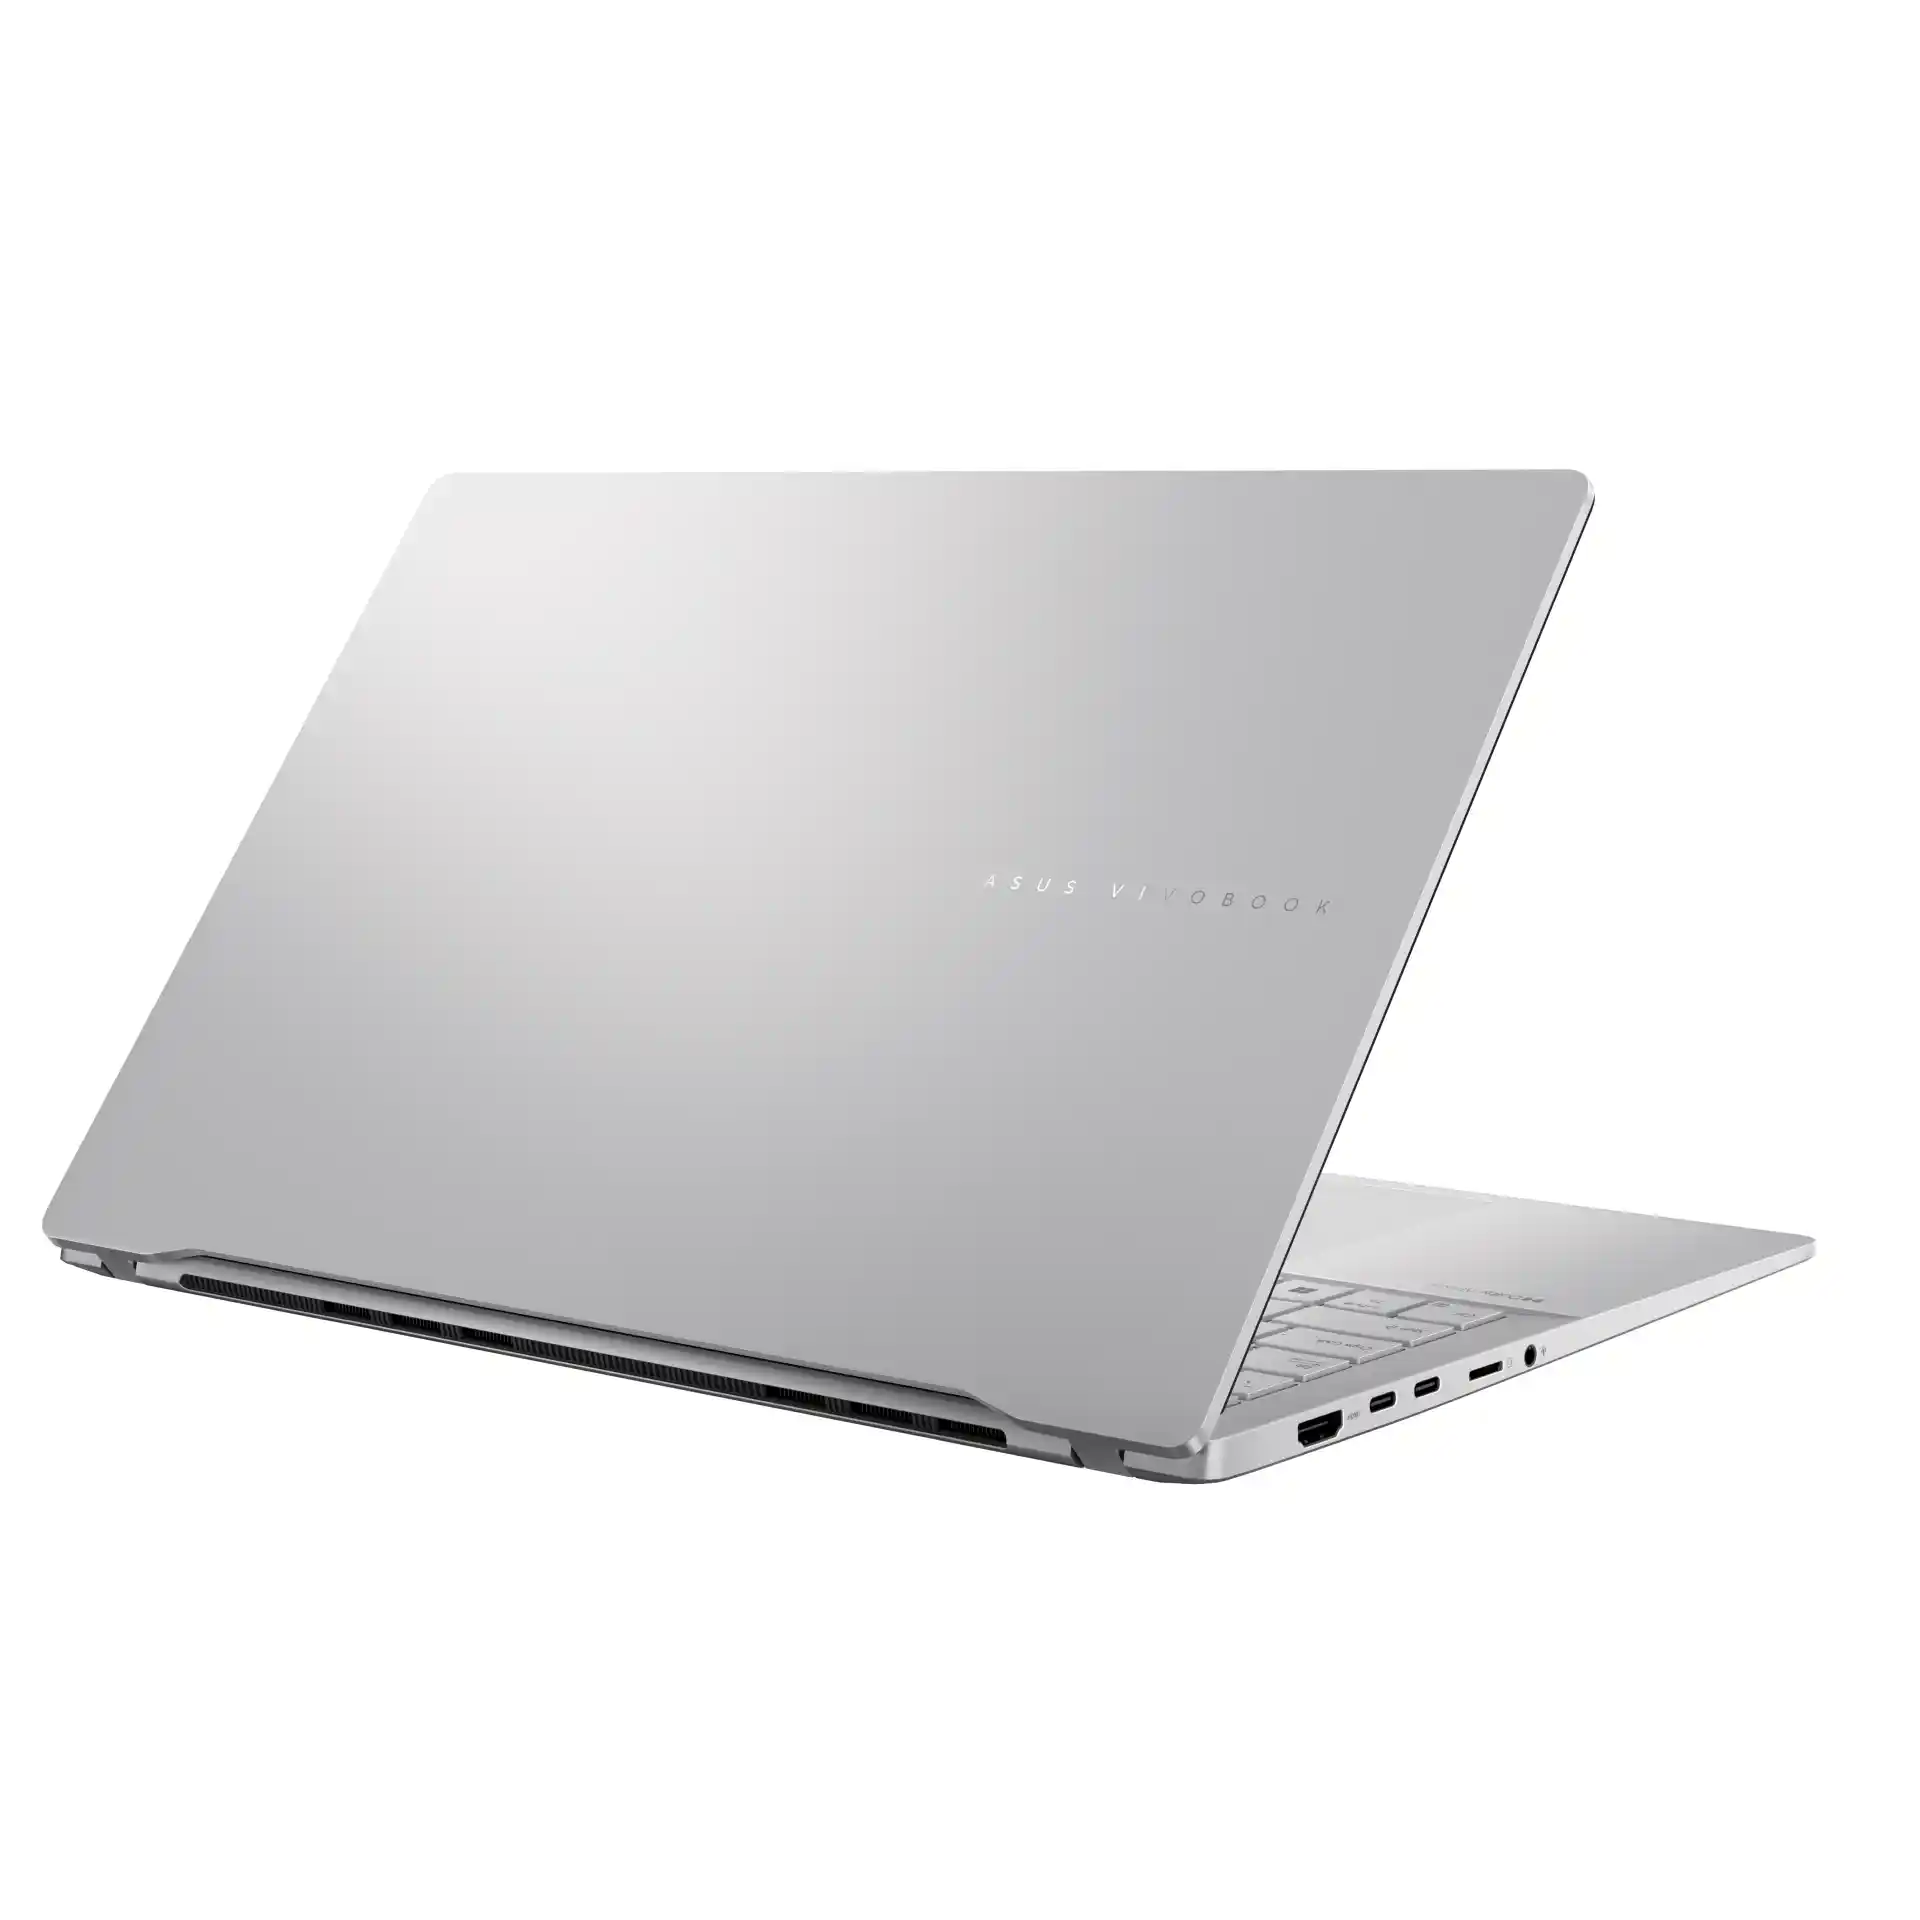 ASUS annuncia il Vivobook S15, primo laptop basato sull'intelligenza artificiale Copilot+ PC - caratteristiche, specifiche, uscita e prezzi